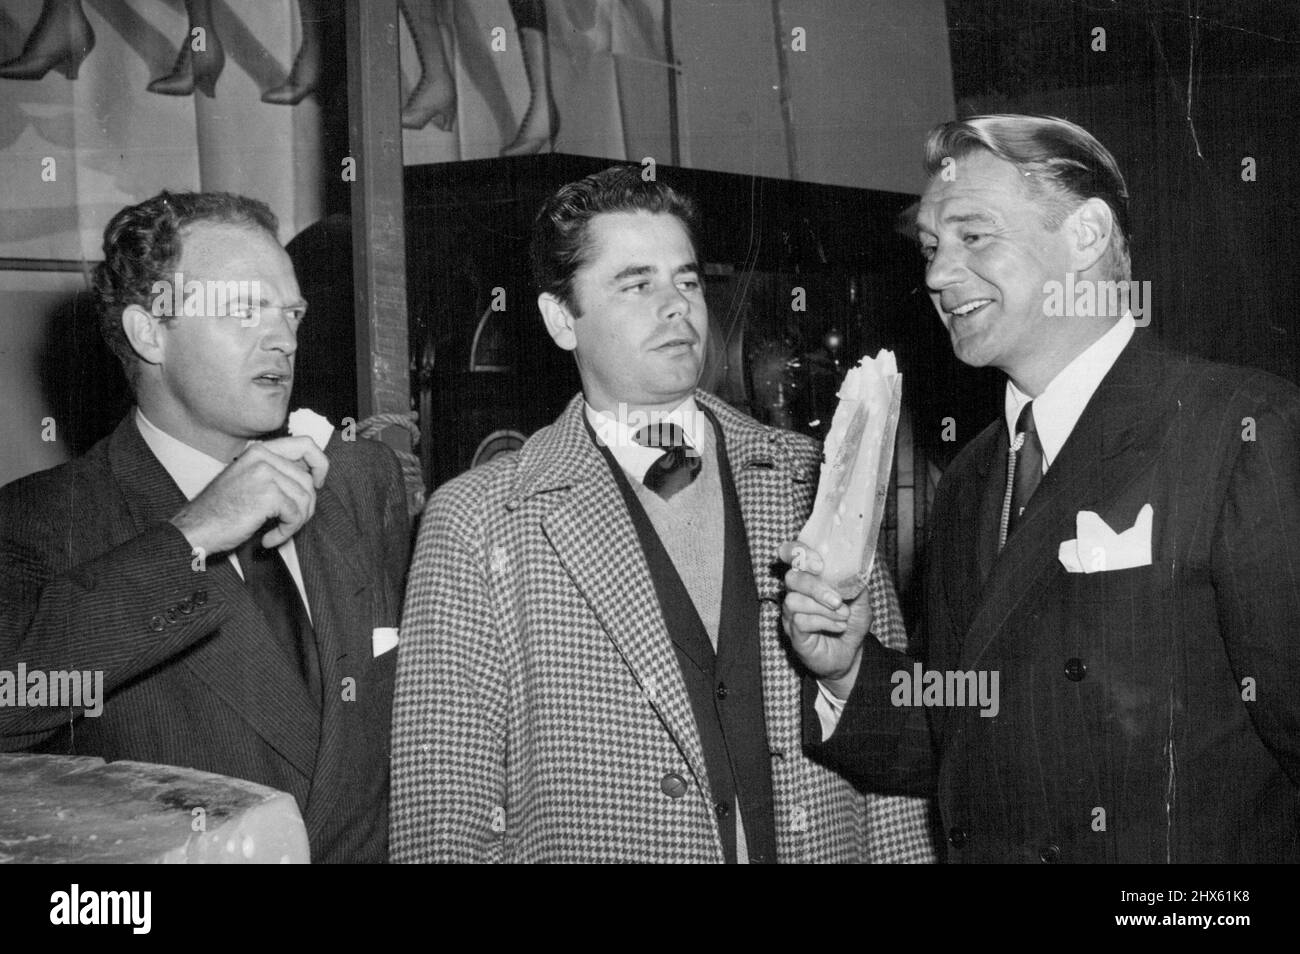 Tre uomini e un certo formaggio -- tre Eroi di Bobbie-Sox si incontrano ad un bazar di carità di Hollywood. Van Heflin, (a sinistra) e Sonny Tufts, (a destra) hanno appena assaggiato un po' di formaggio del Wisconsin e con reazioni ovviamente divergenti. Glen Ford, (centro) ha appena giocato al sicuro e guardato. Febbraio 23, 1947. (Foto di ACME Newspictures, Inc.).;tre uomini e un certo formaggio -- tre Eroi di Bobbie-Sox si incontrano ad un bazar di carità di Hollywood. Van Heflin, (a sinistra) e Sonny Tufts, (a destra) hanno appena assaggiato un po' di formaggio del Wisconsin Foto Stock